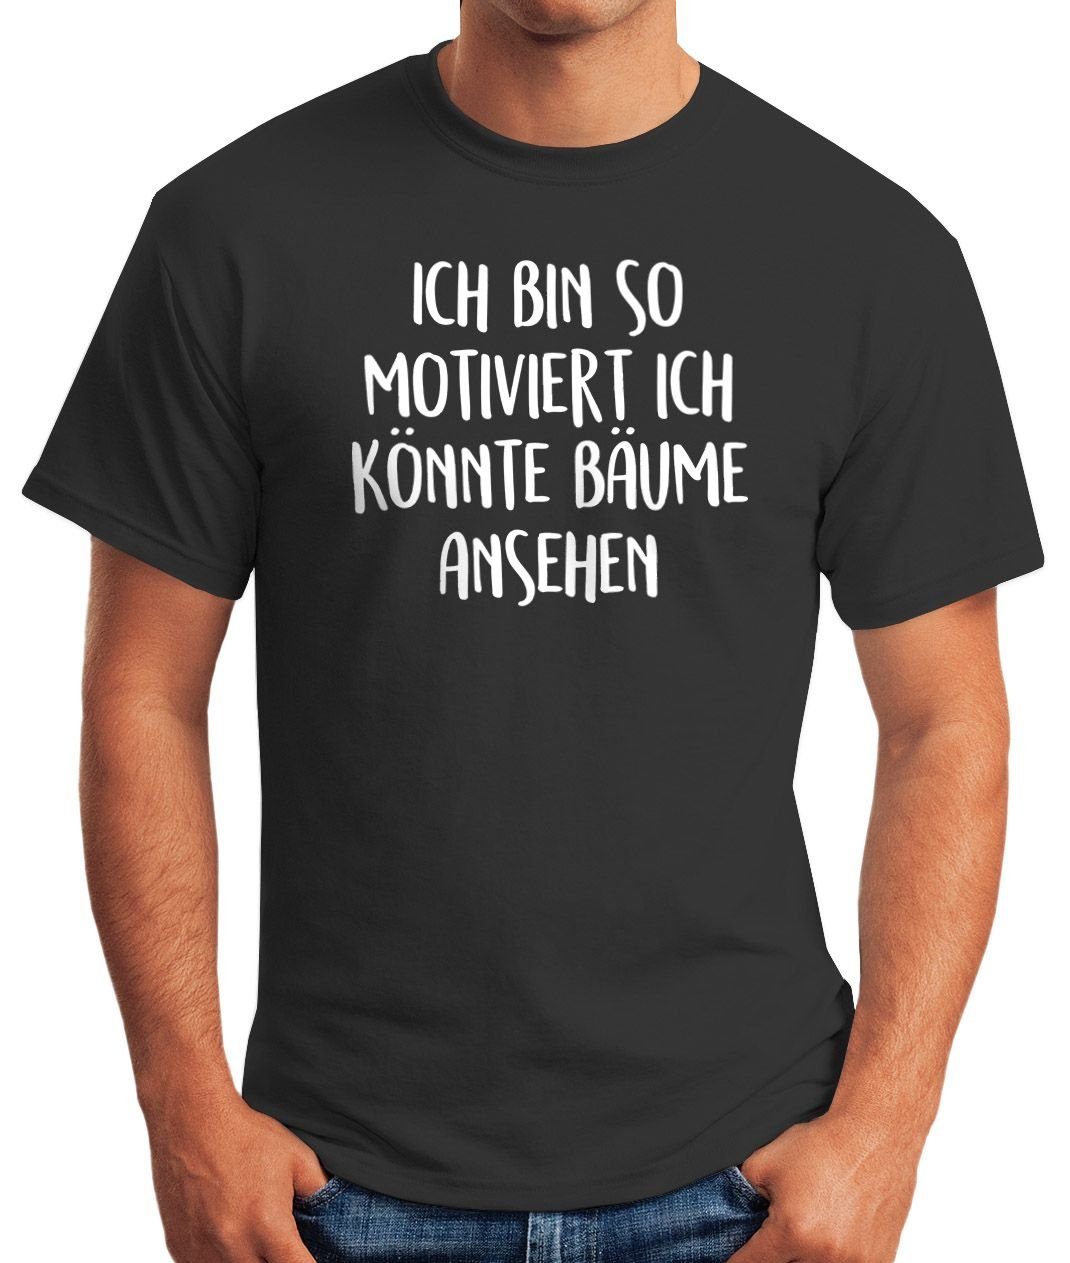 Bäume Herren Ich bin ansehen könnte T-Shirt mit Fun-Shirt Print-Shirt schwarz Spruch lustig so MoonWorks motiviert ich Moonworks® Print